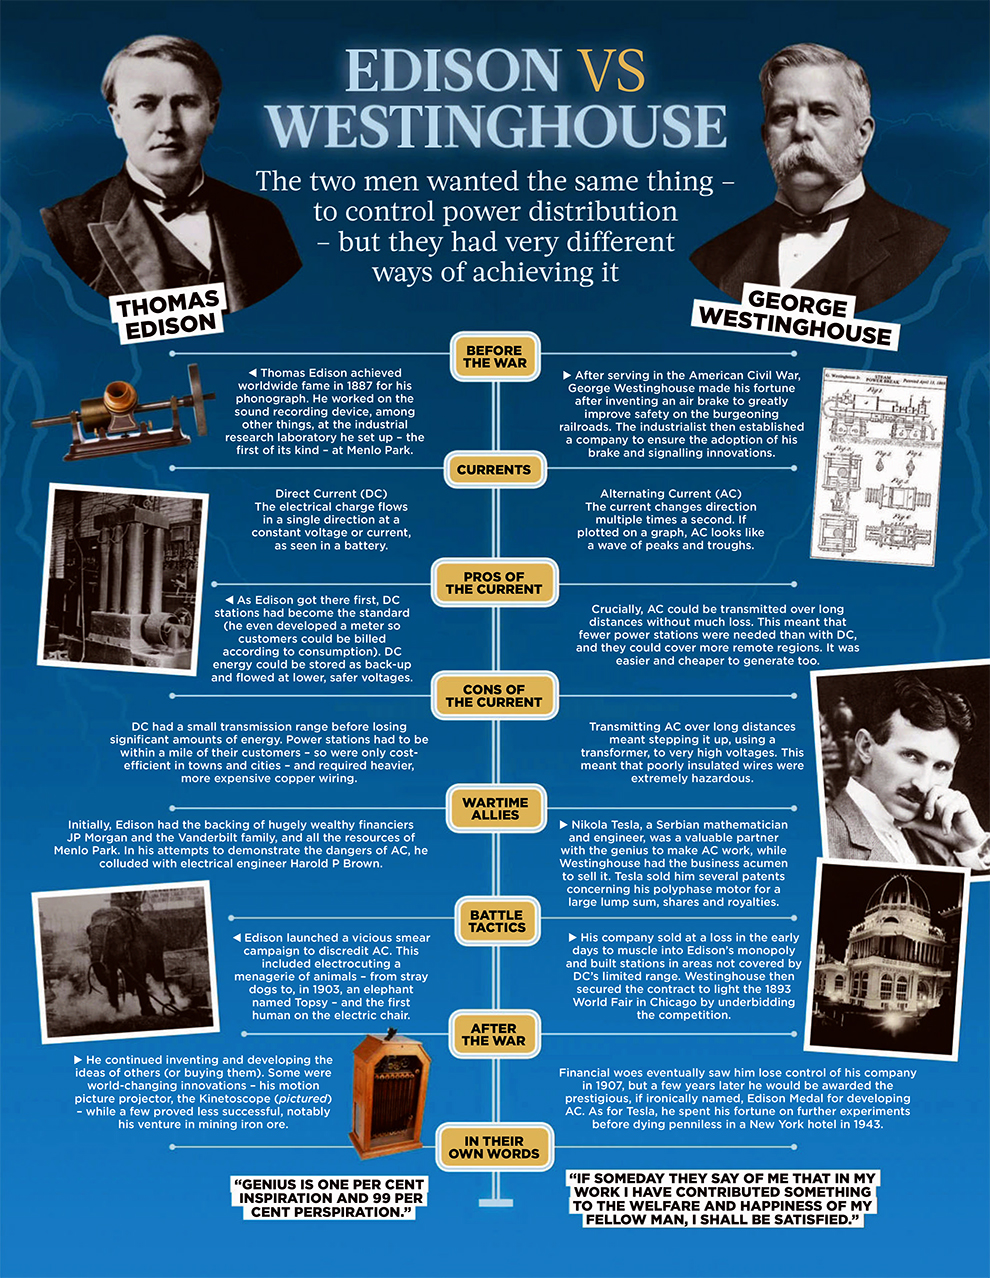 Edison vs Westinghouse image - ❤ History.